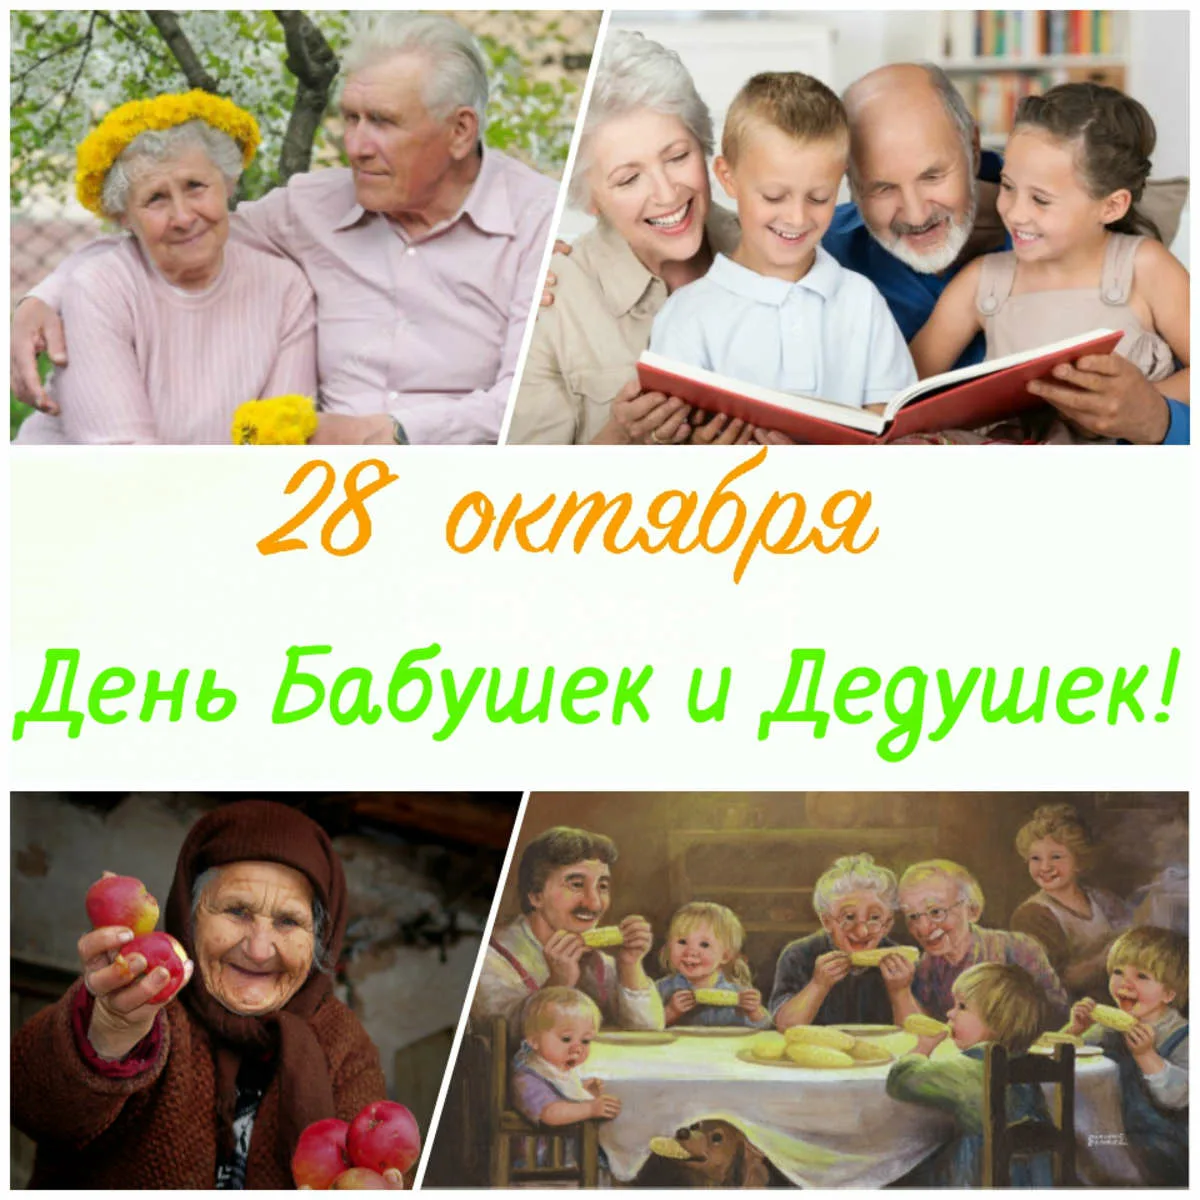 Какой сегодня праздник день бабушек. День бабушек и дедушек в России. С днём бабушек и дедушек. С днём бабушек и дедушек открытки. 28 Октября – день бабушек и дедуше.